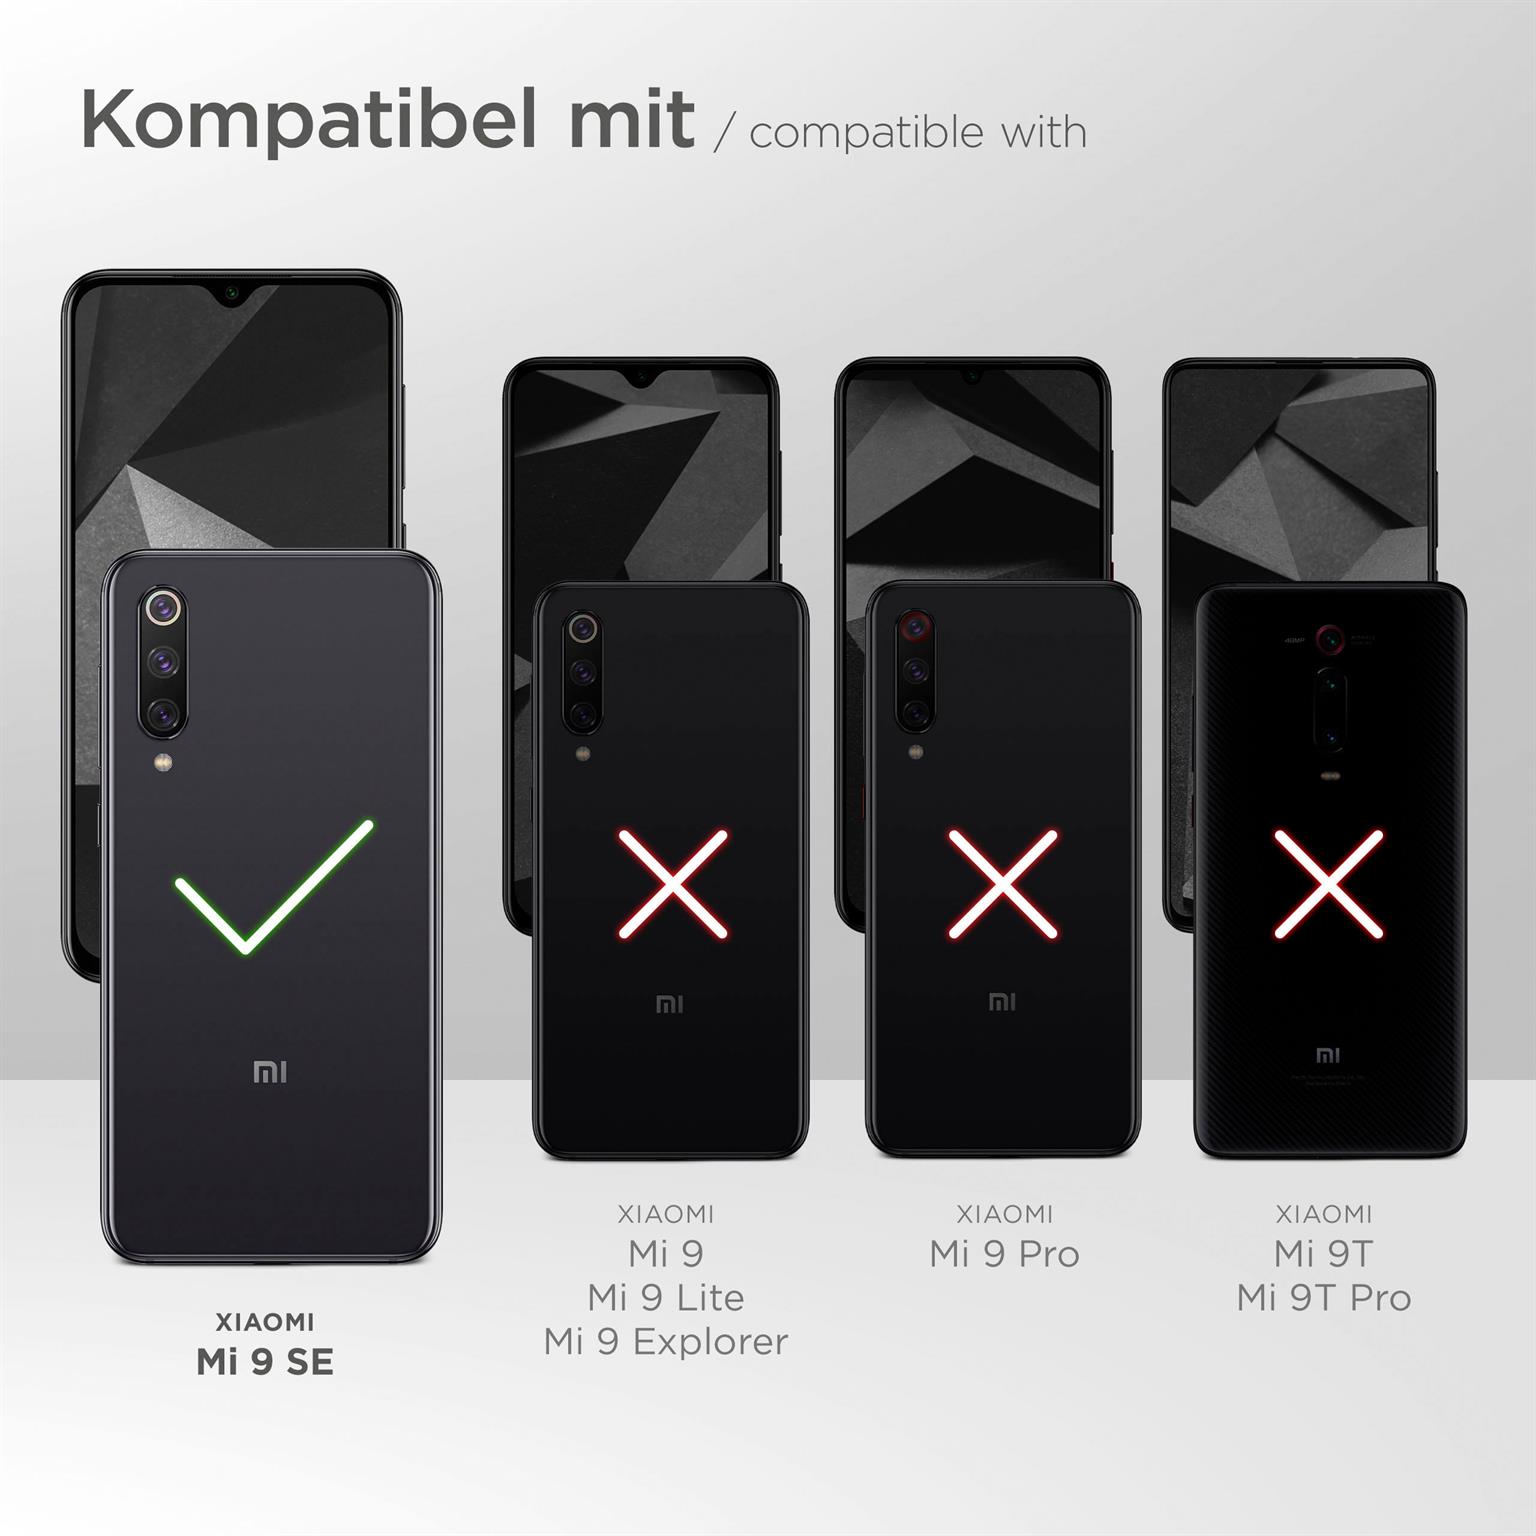 moex Flip Case für Xiaomi Mi 9 SE – PU Lederhülle mit 360 Grad Schutz, klappbar